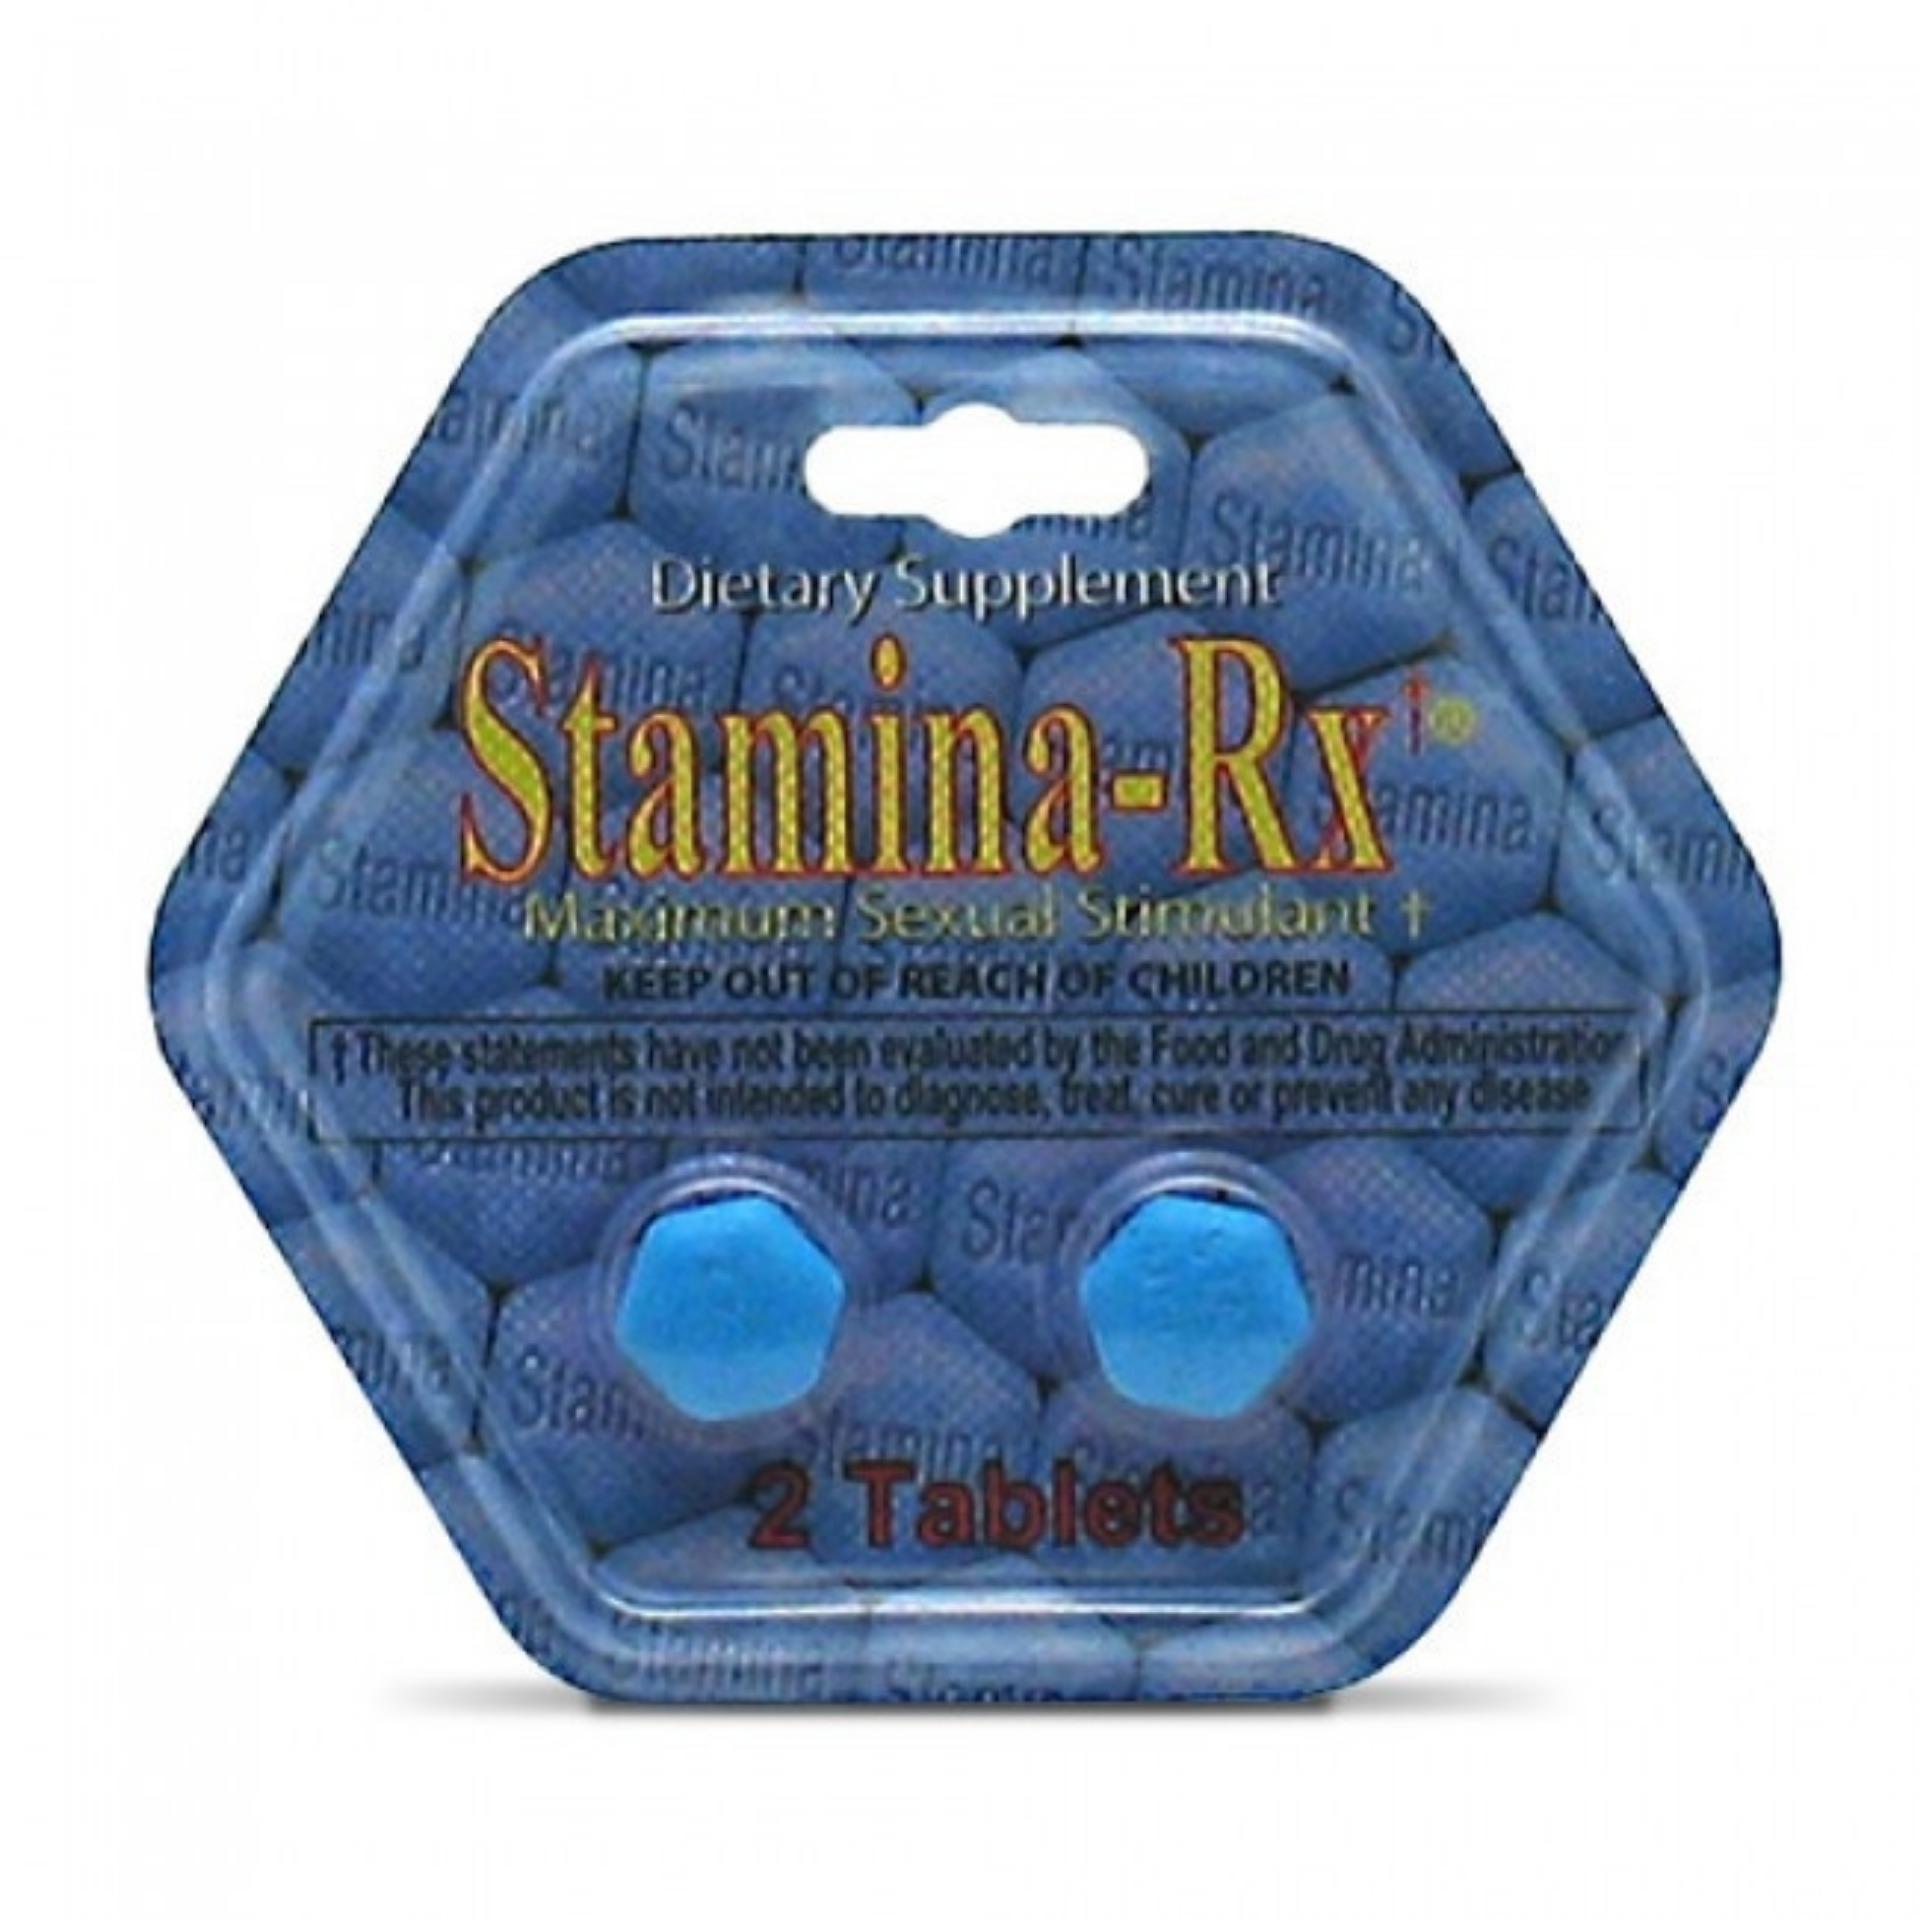 Sản phẩm hỗ trợ tình dục cho nam Stamina-Rx